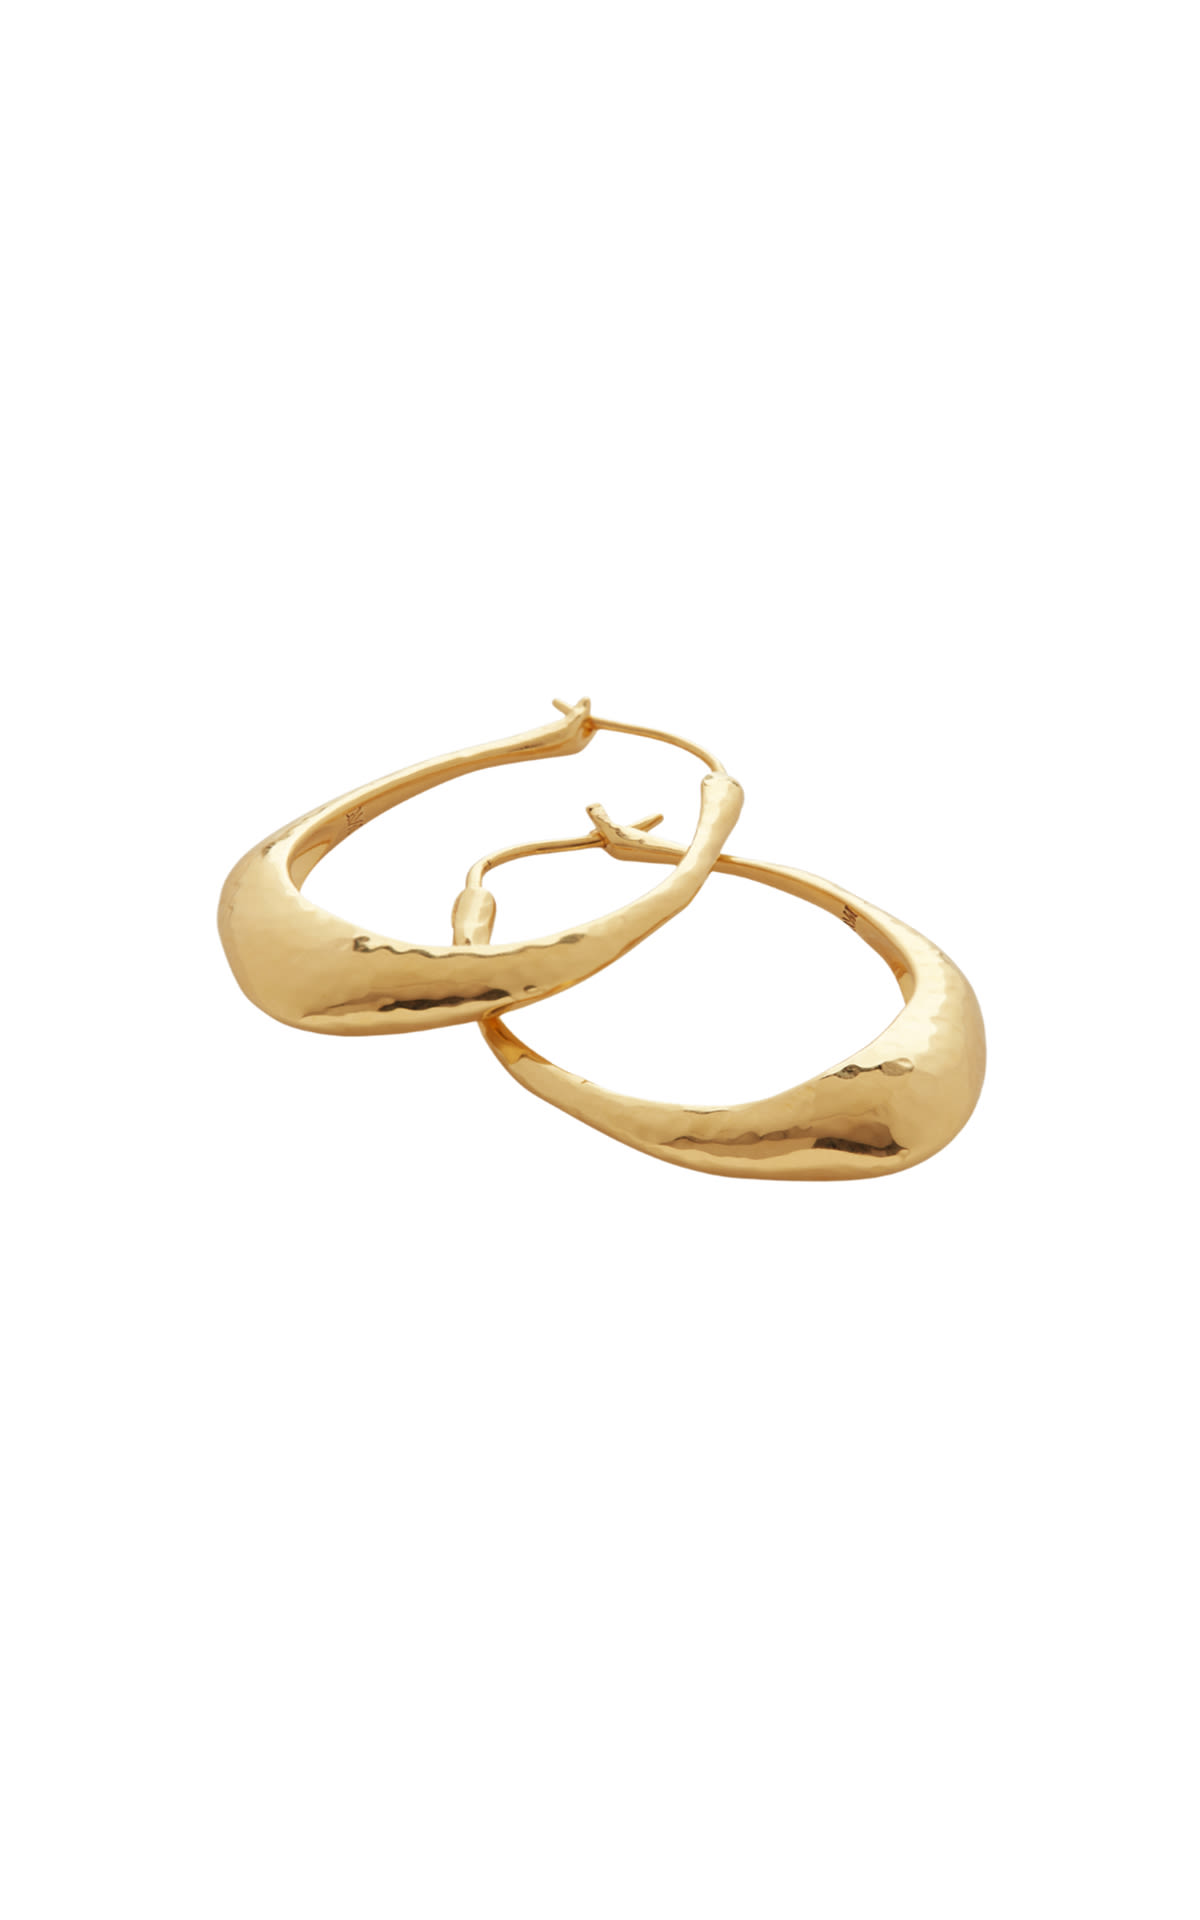 Monica Vinader 18ct Gold Vermeil Deia Medium Hoop Earrings  from Bicester Village